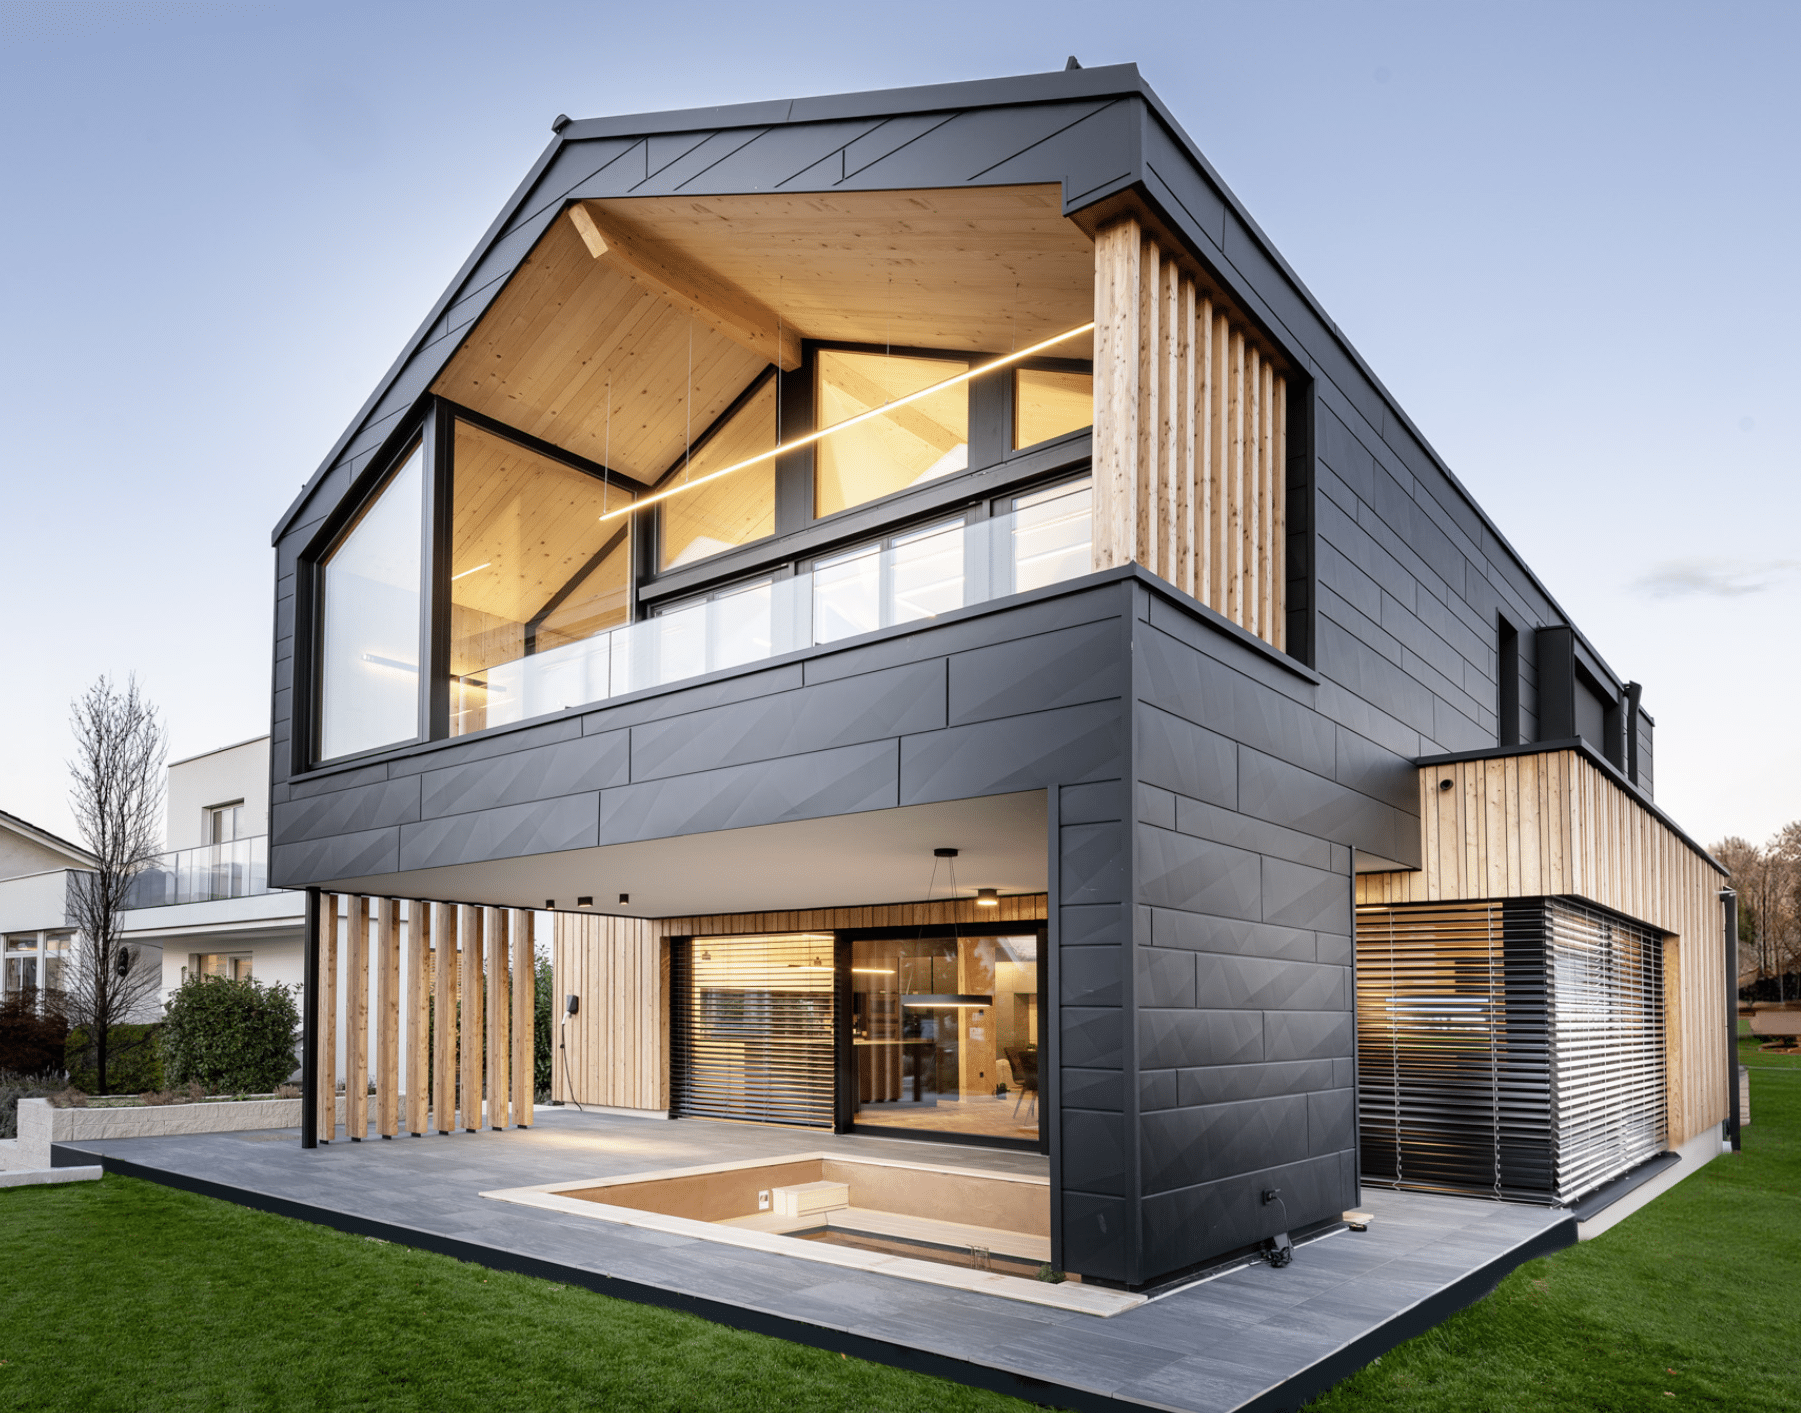 Erler Haus zeigt ein sehr modernes Holzriegelhaus mit gefliester Terrasse,dunkler Wandverkleidung, Balkon und eingebauter Sitzlounge inklusive Fernseher.